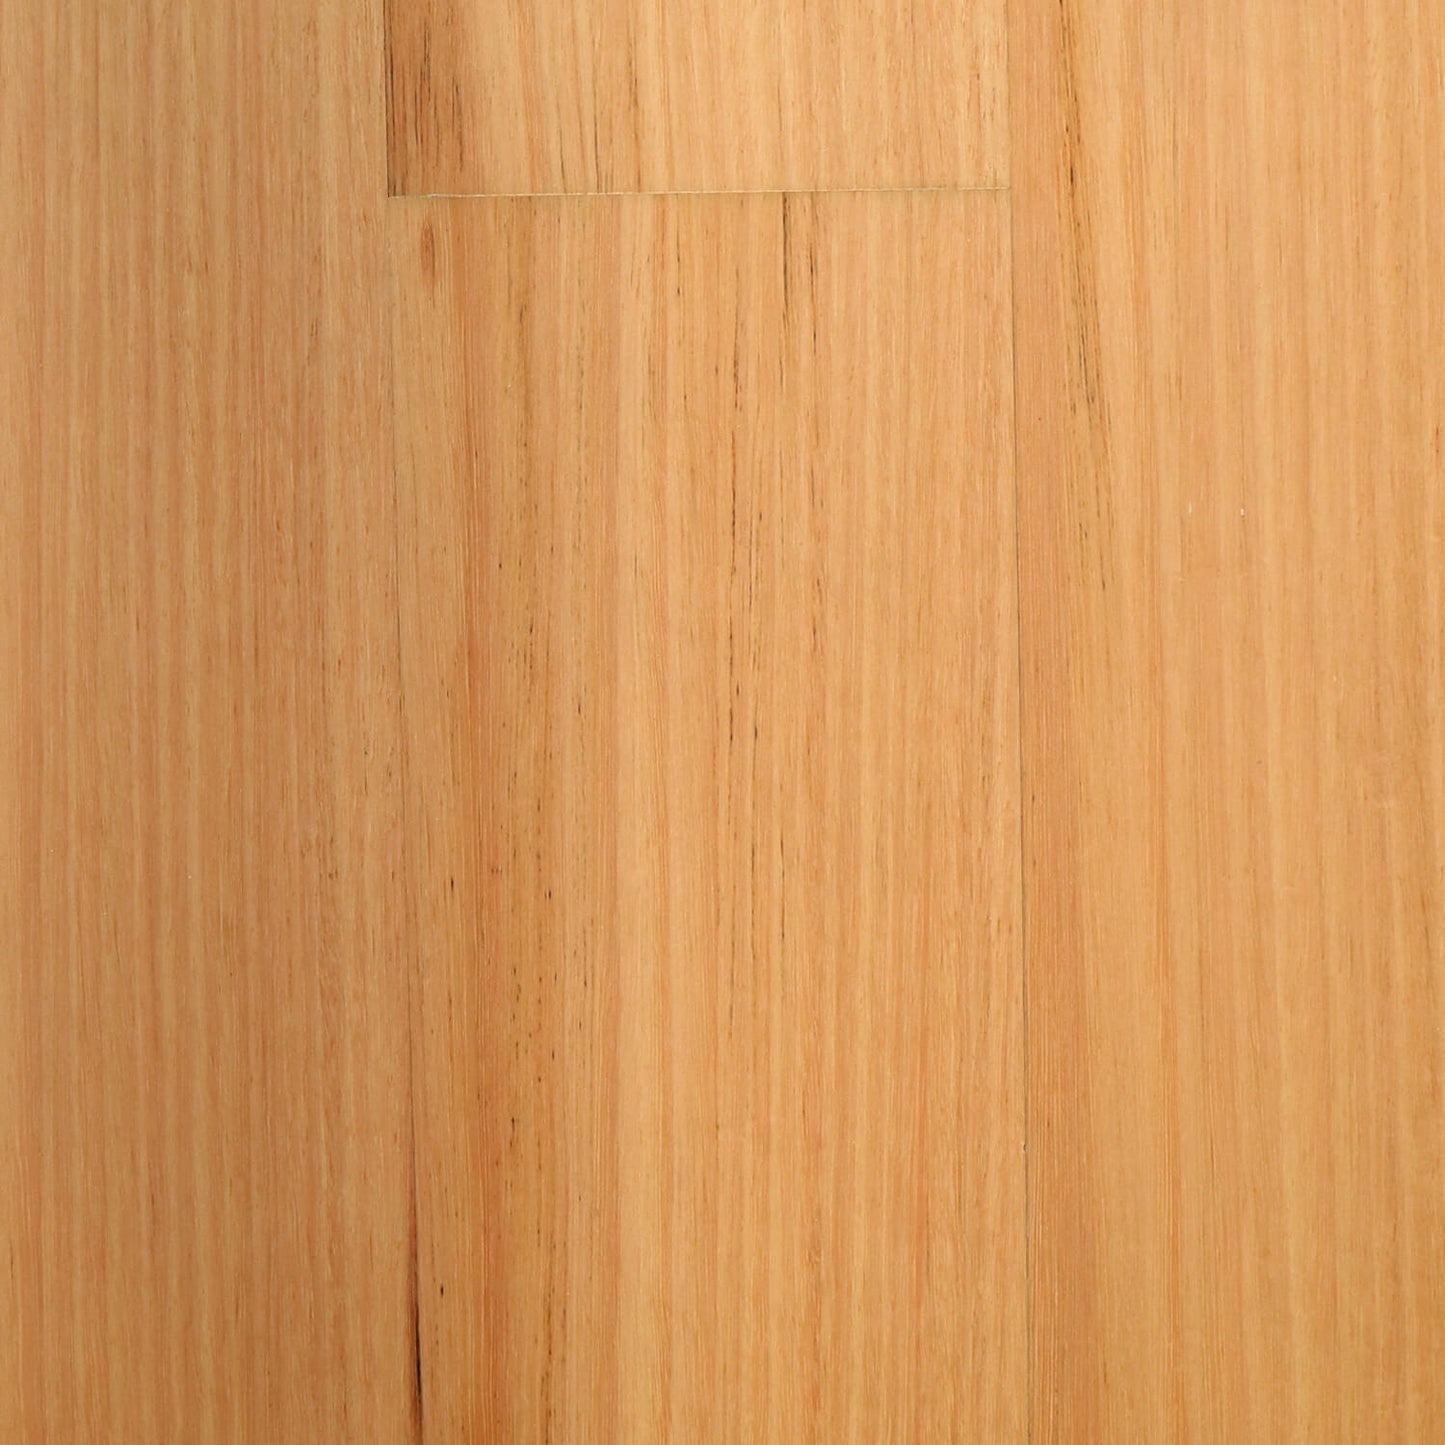 Tas. Oak Engineered Timber Hardwood Flooring